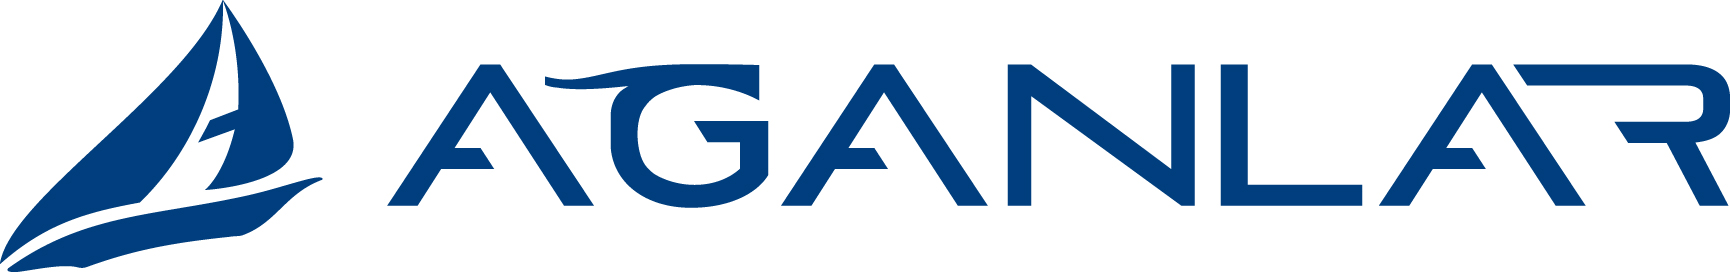 aganlar-group-logo-(H)